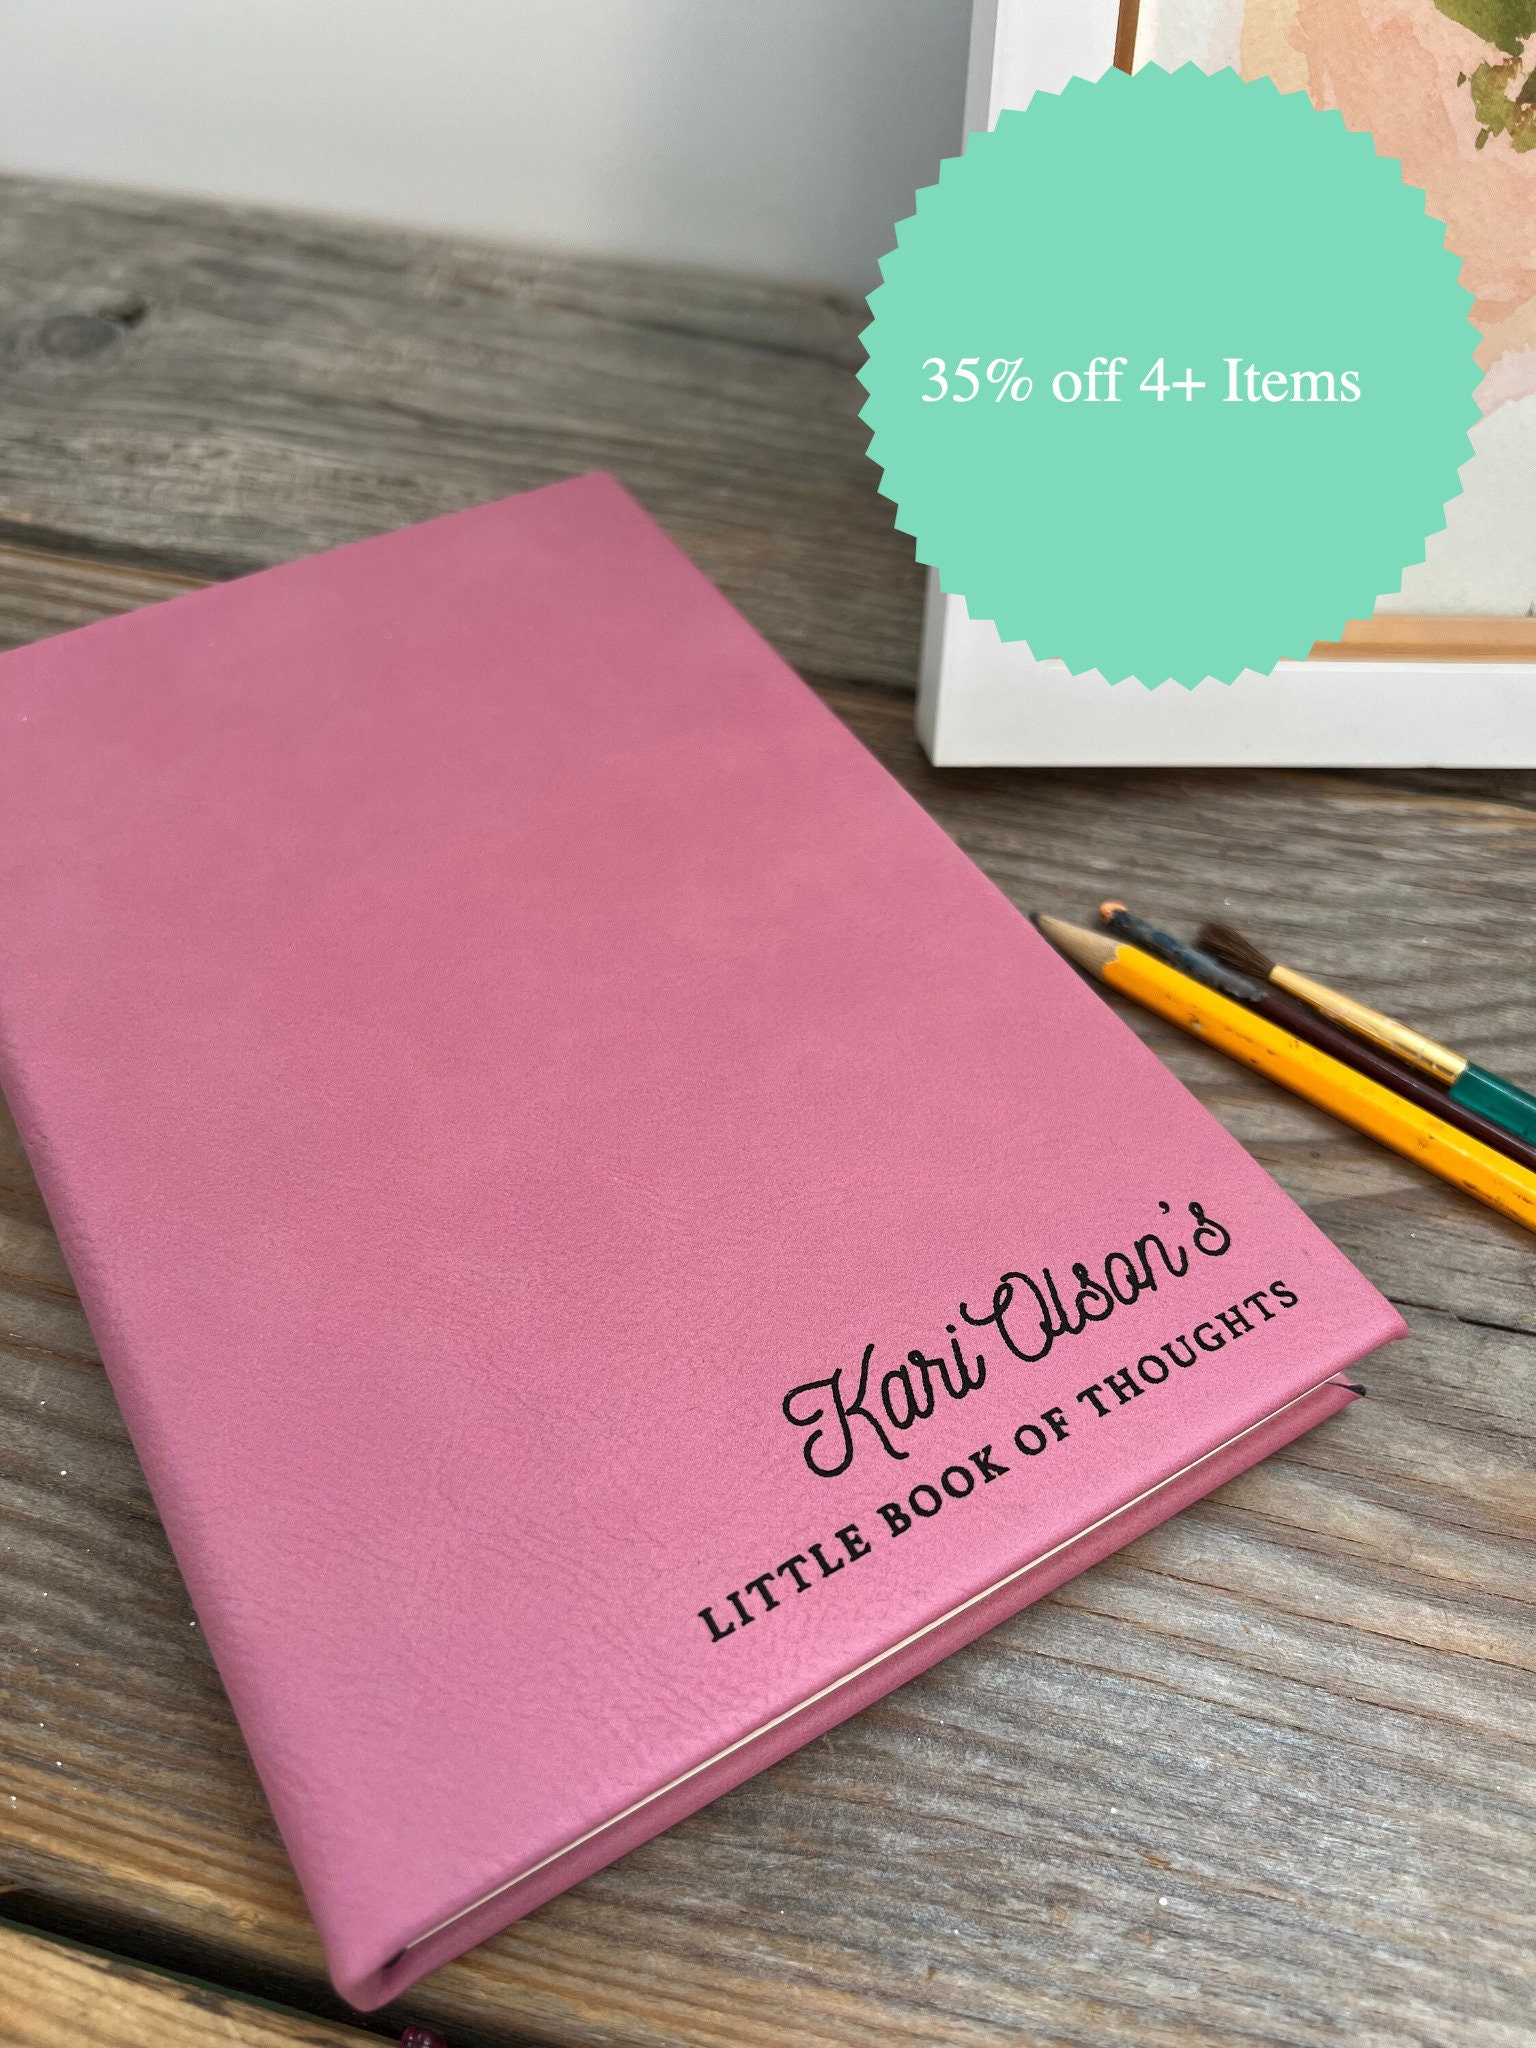 YOLO Attitude Journal Gift Set for Girls - Hardcover Notebook, Pen